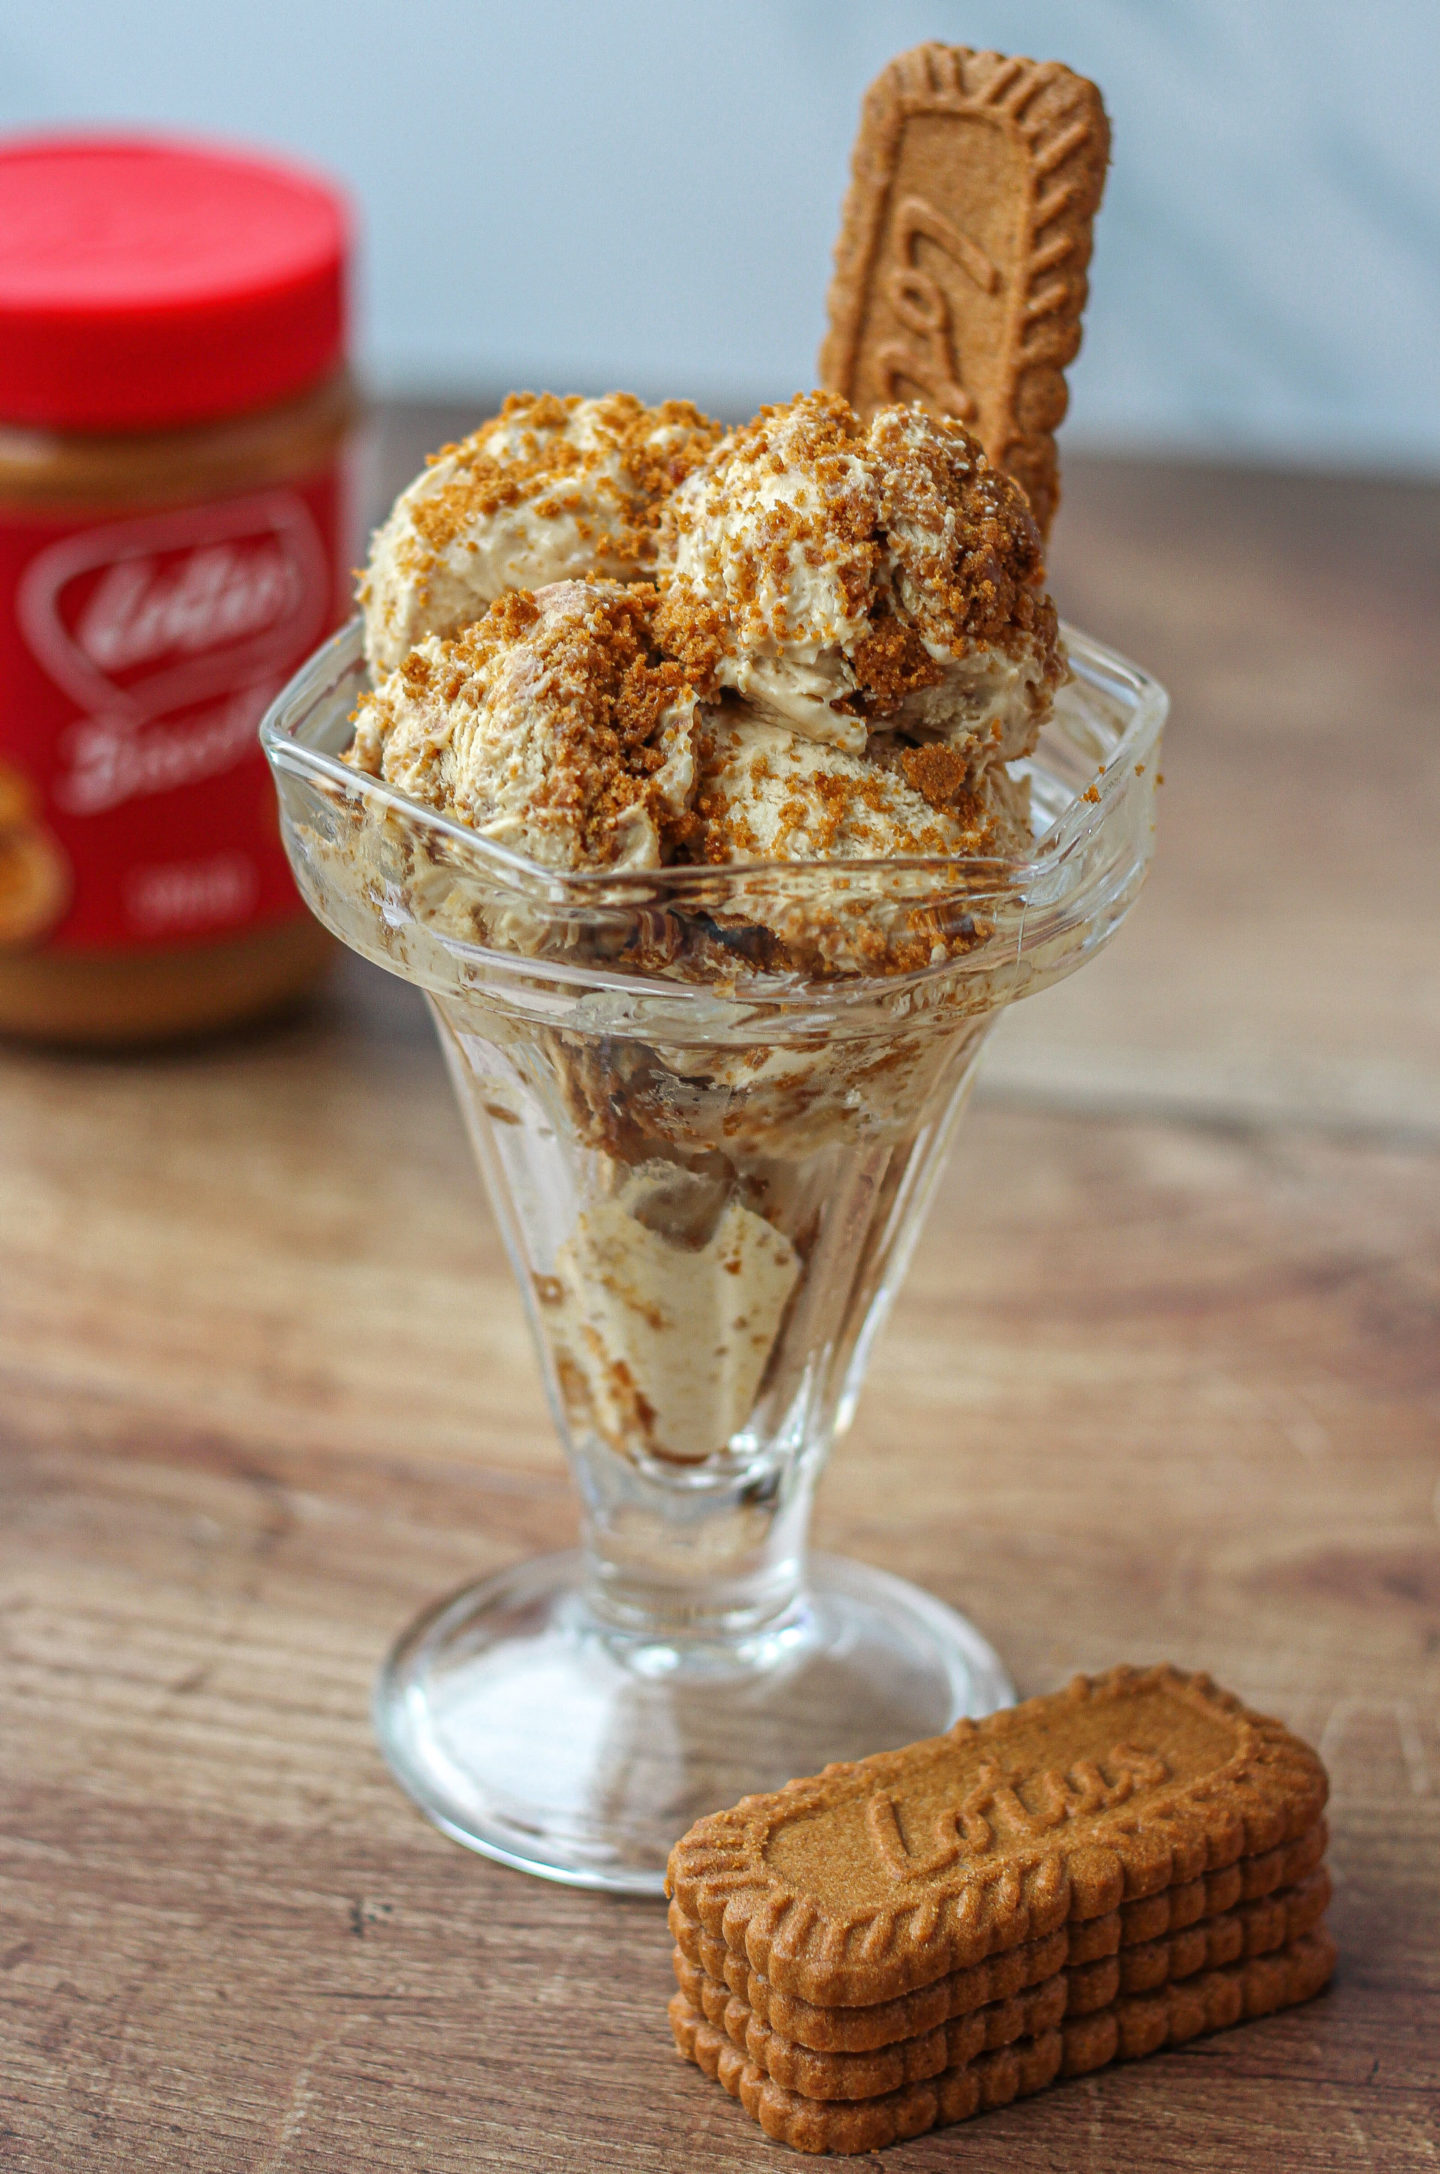 No-churn Biscoff ice cream sundae with Biscoff spread jar in background